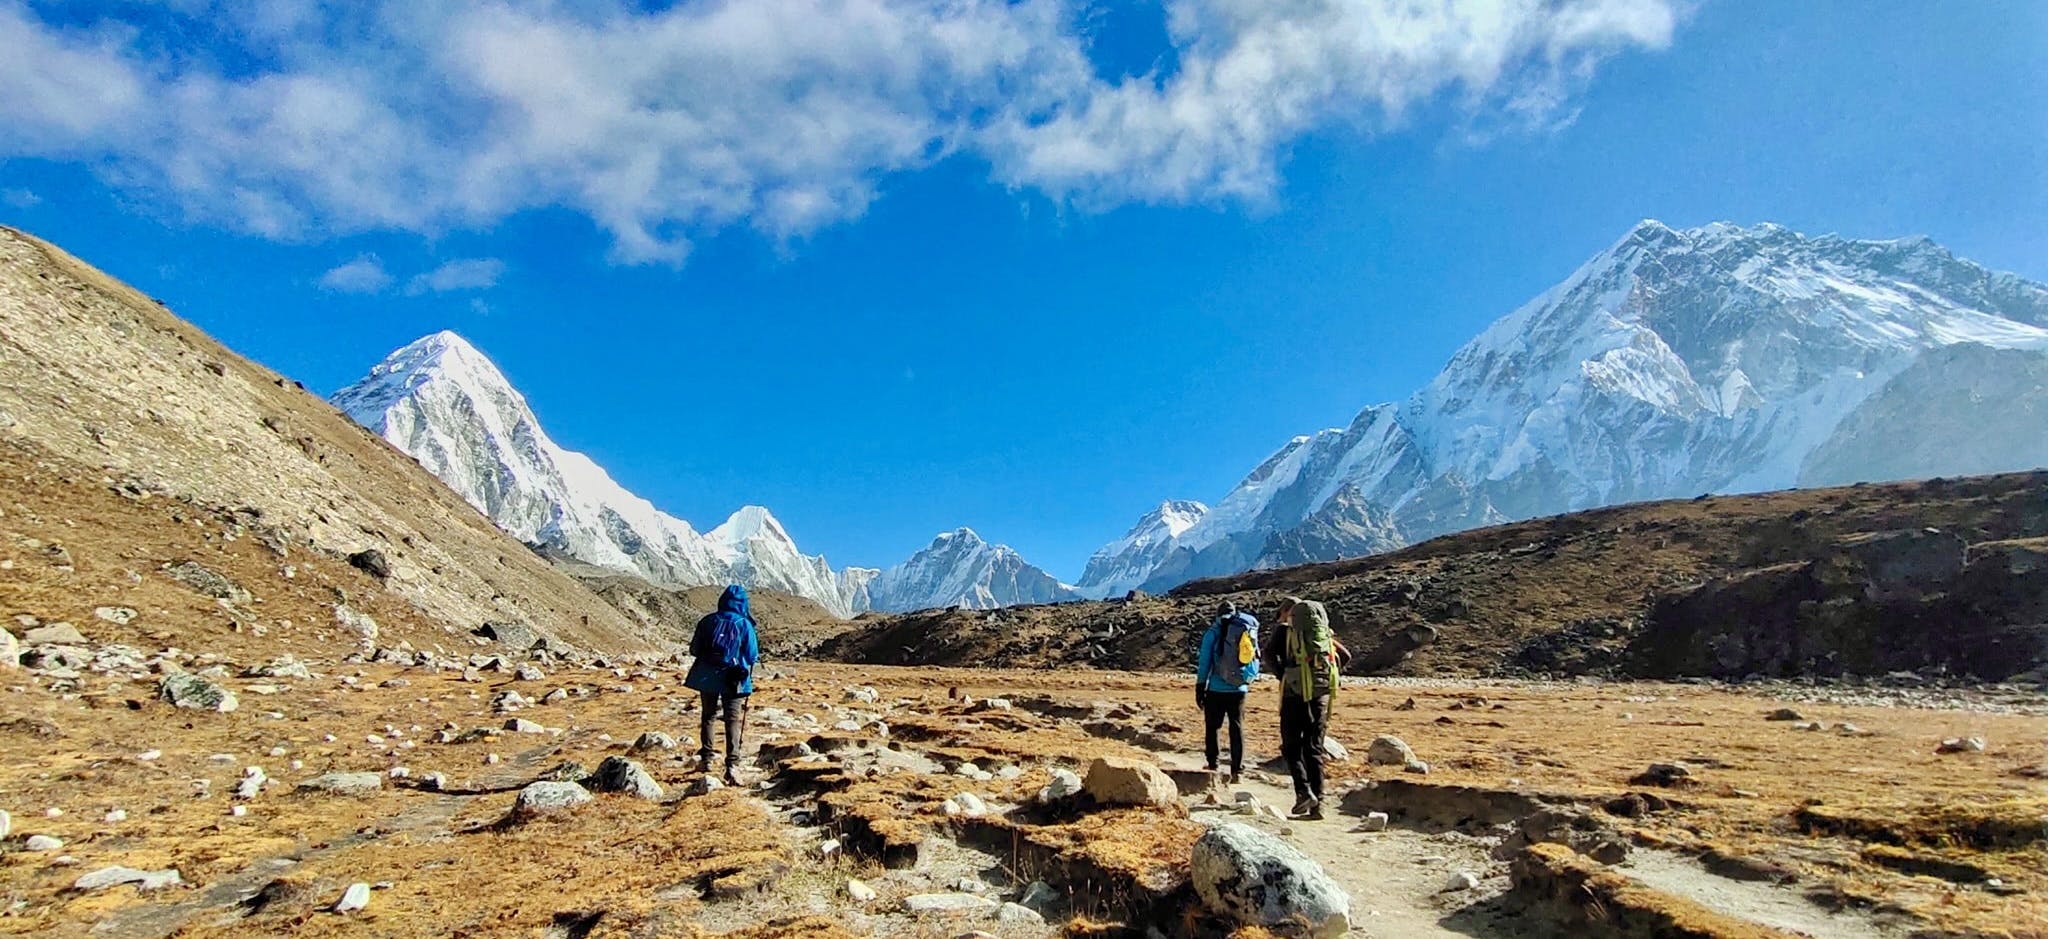 Trekking in Nepal in Autumn Season - Best season to trek in Nepal